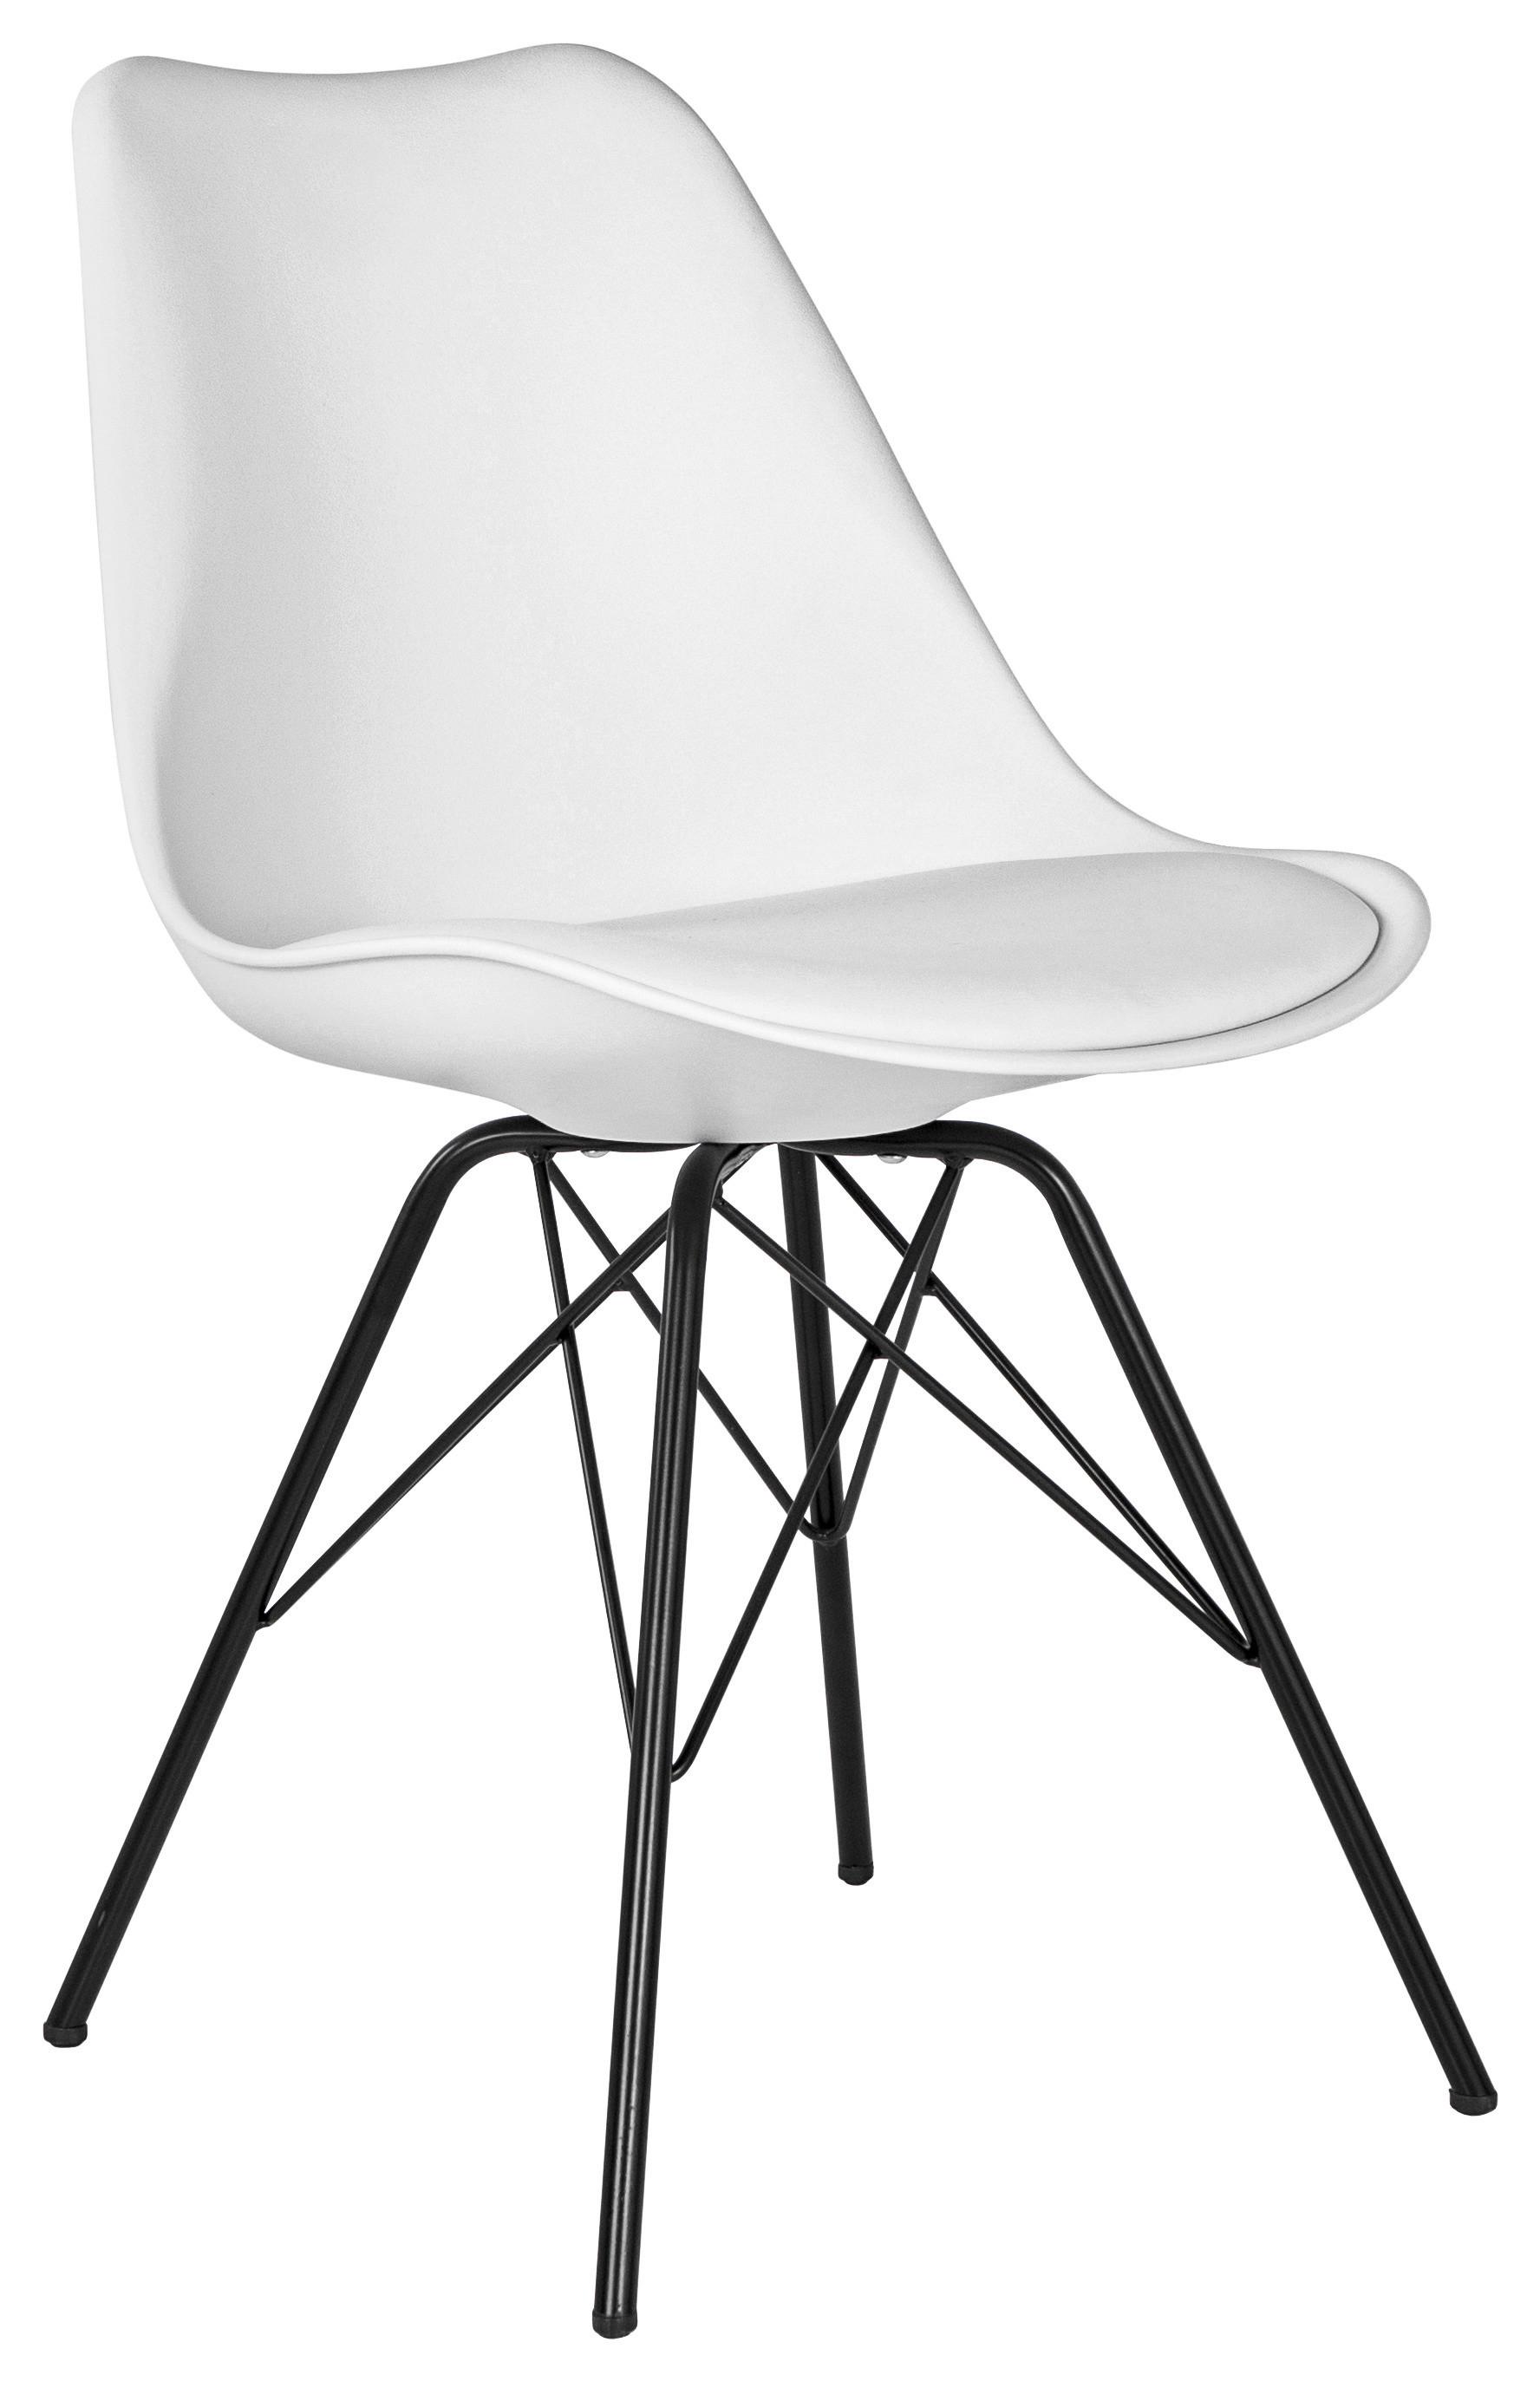 Stuhl in Weiss - Weiss/Schwarz, Modern, Kunststoff/Textil (55,5/86/48cm) - Modern Living